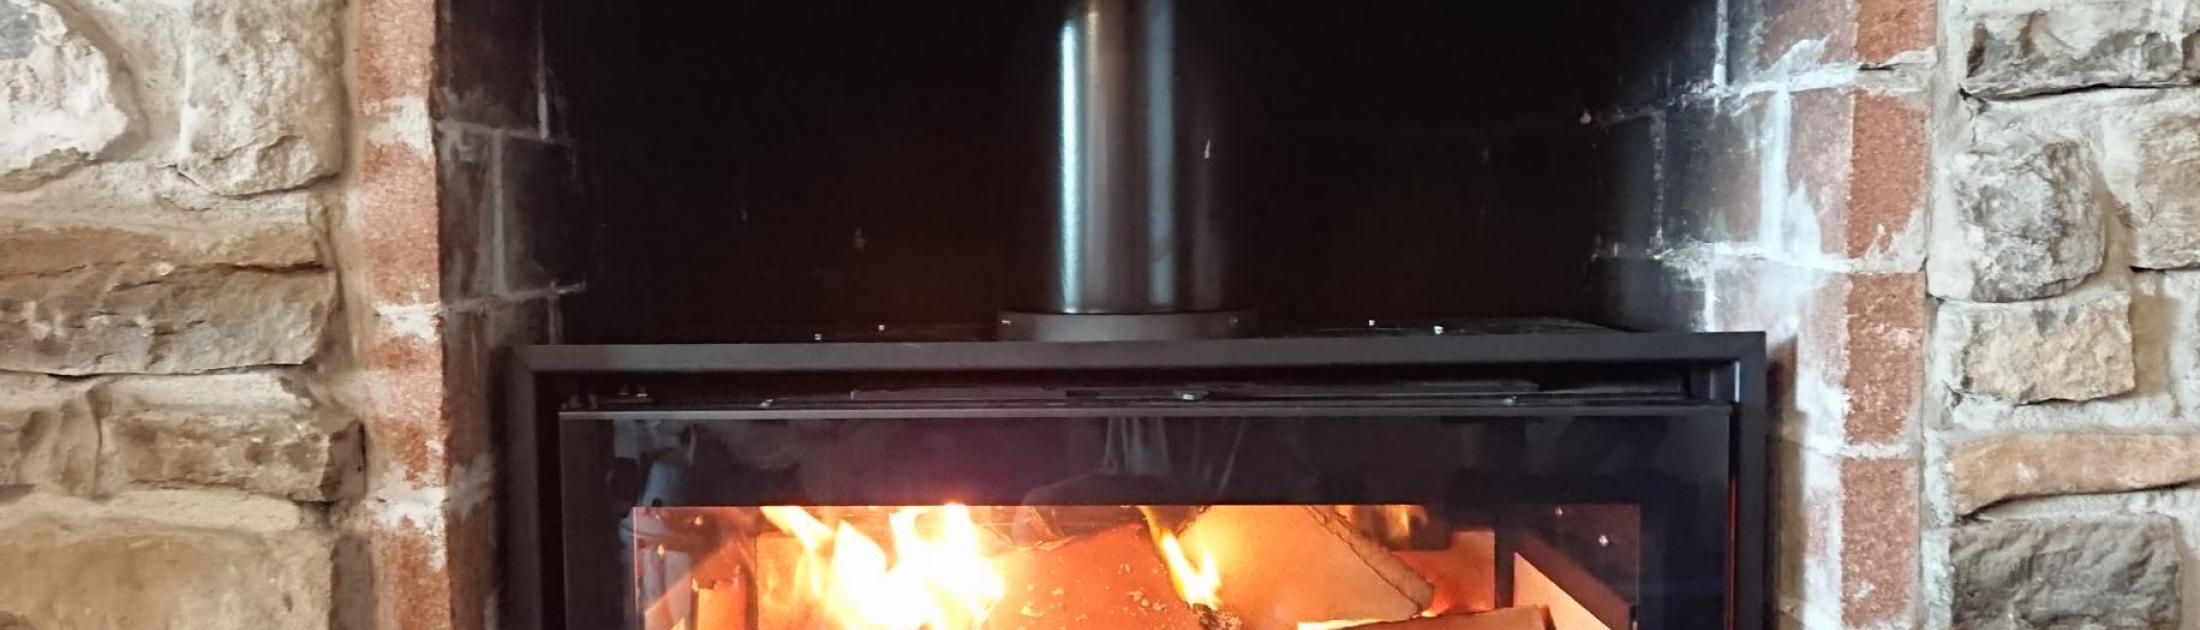 Installation d'un insert dans cheminée existant à MARSEILLE